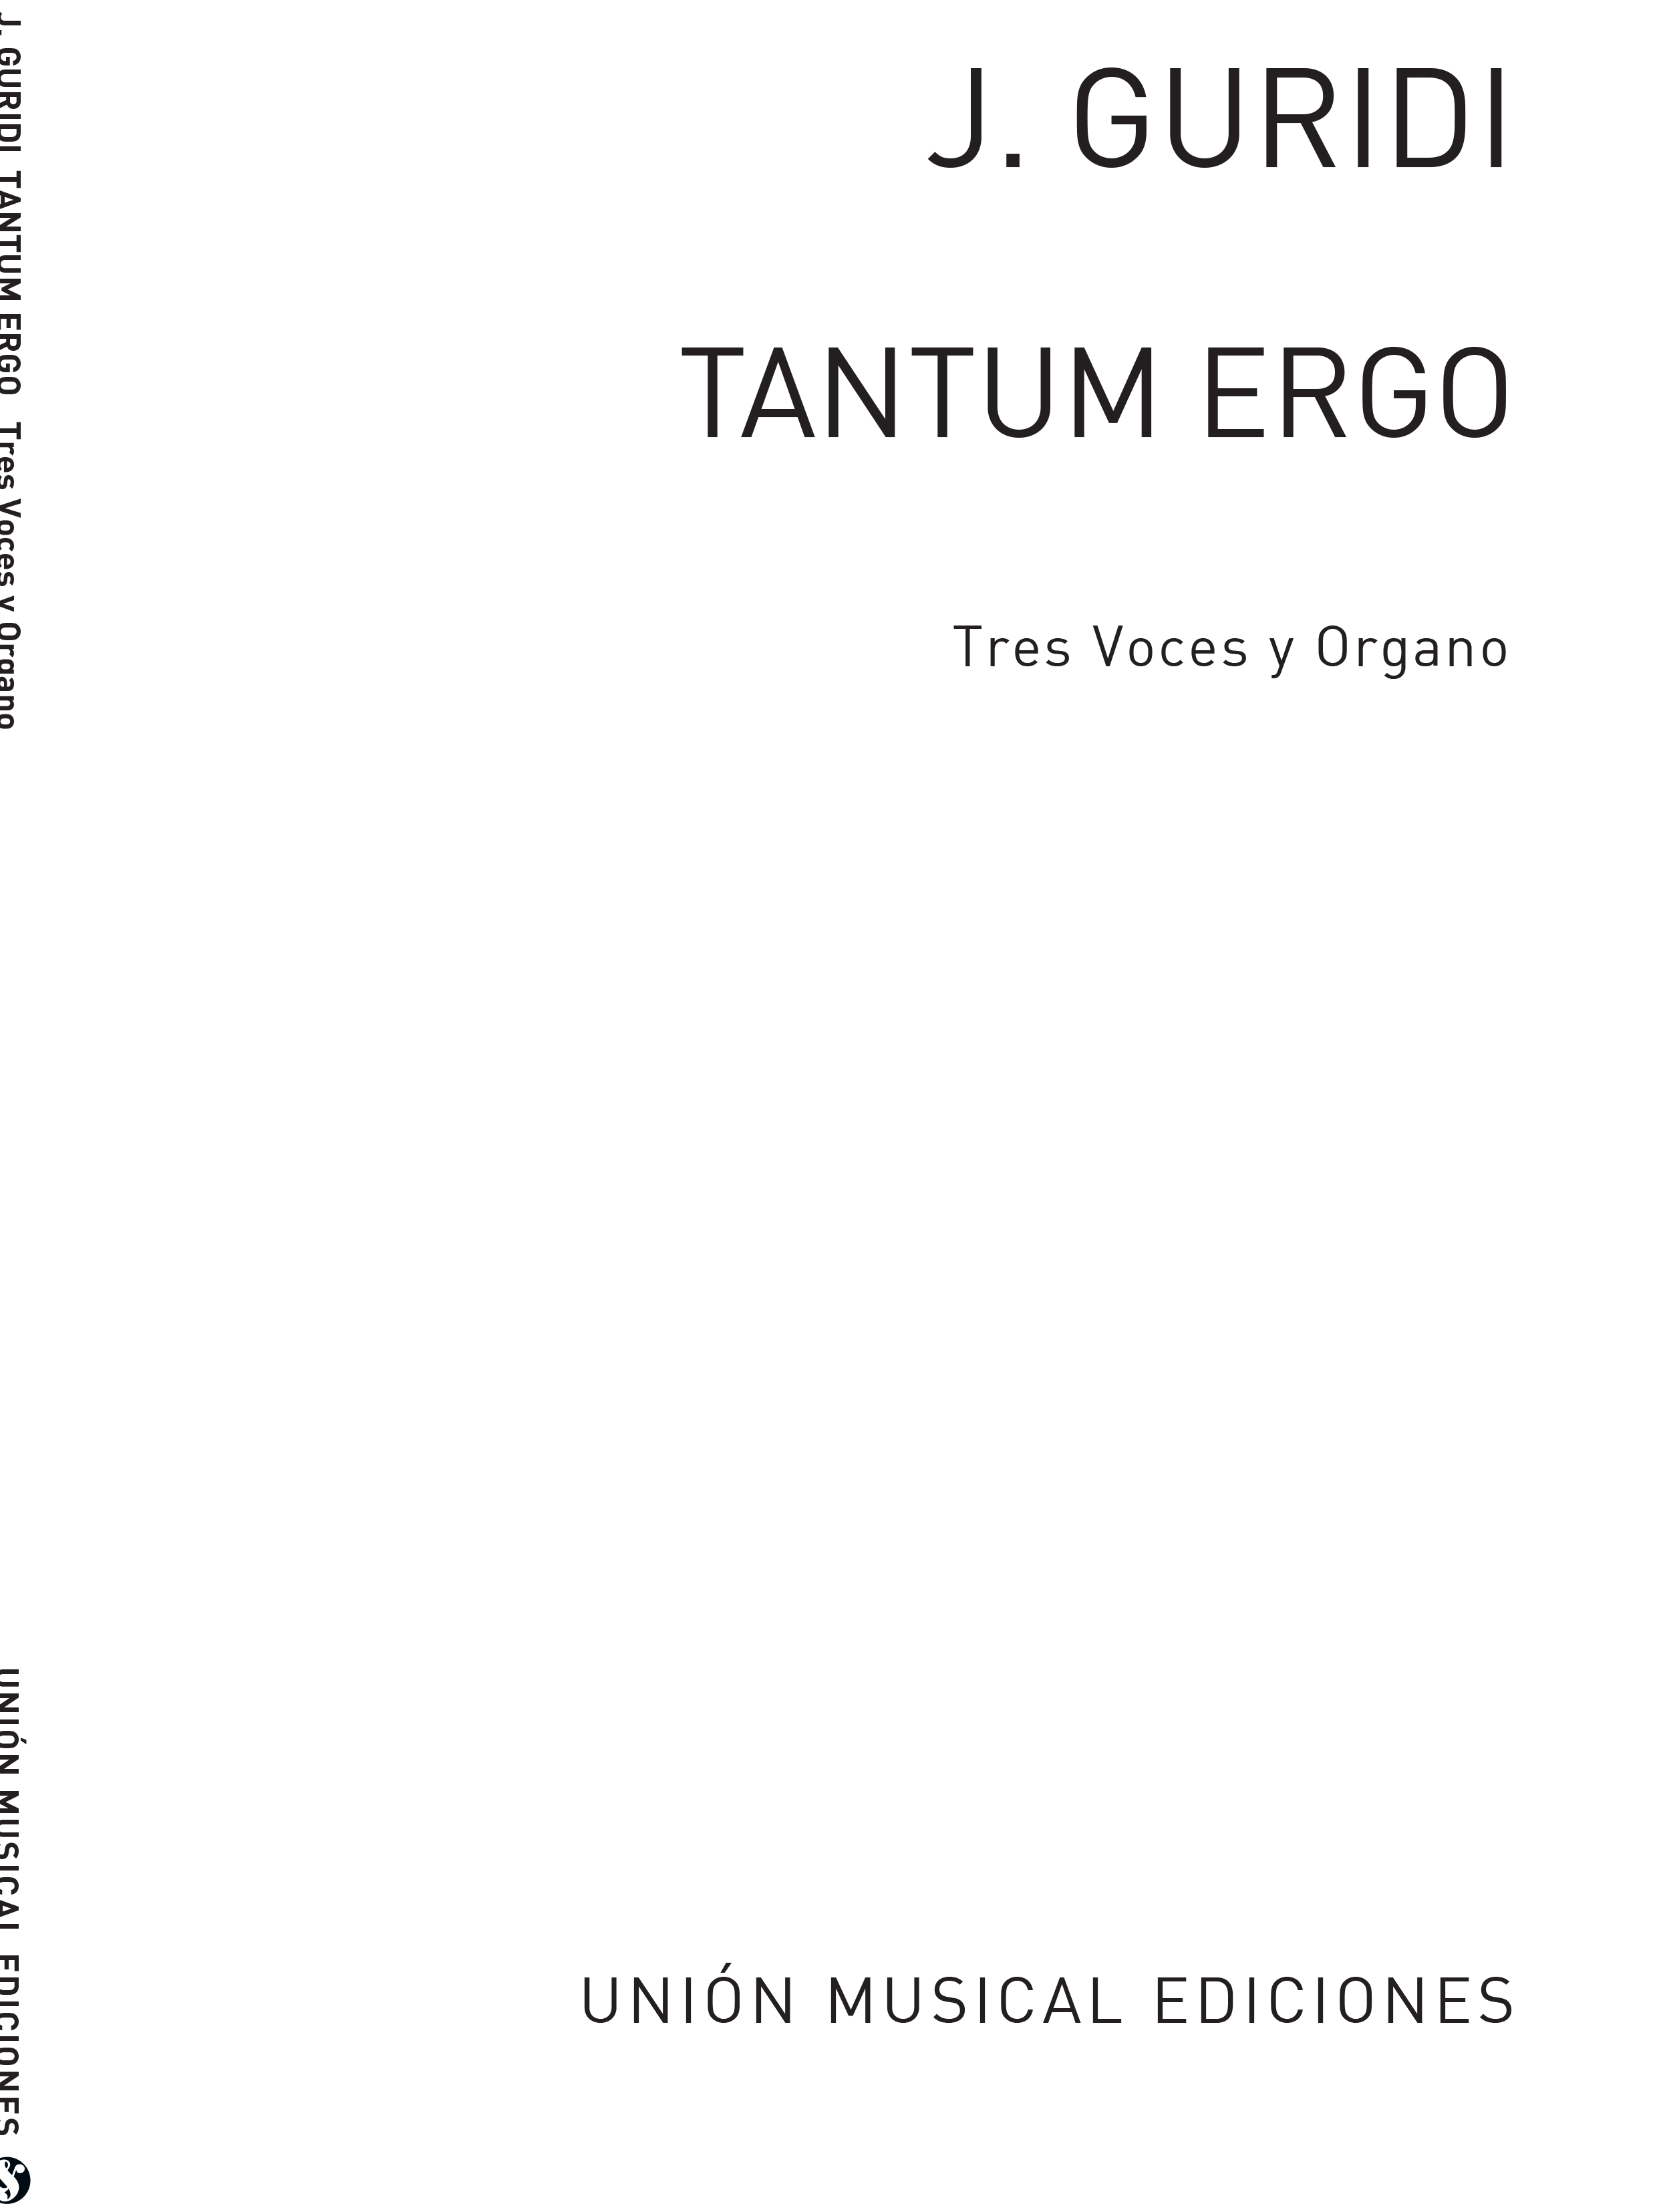 Jesus Guridi: Tantum Ergo (STB/Organ)